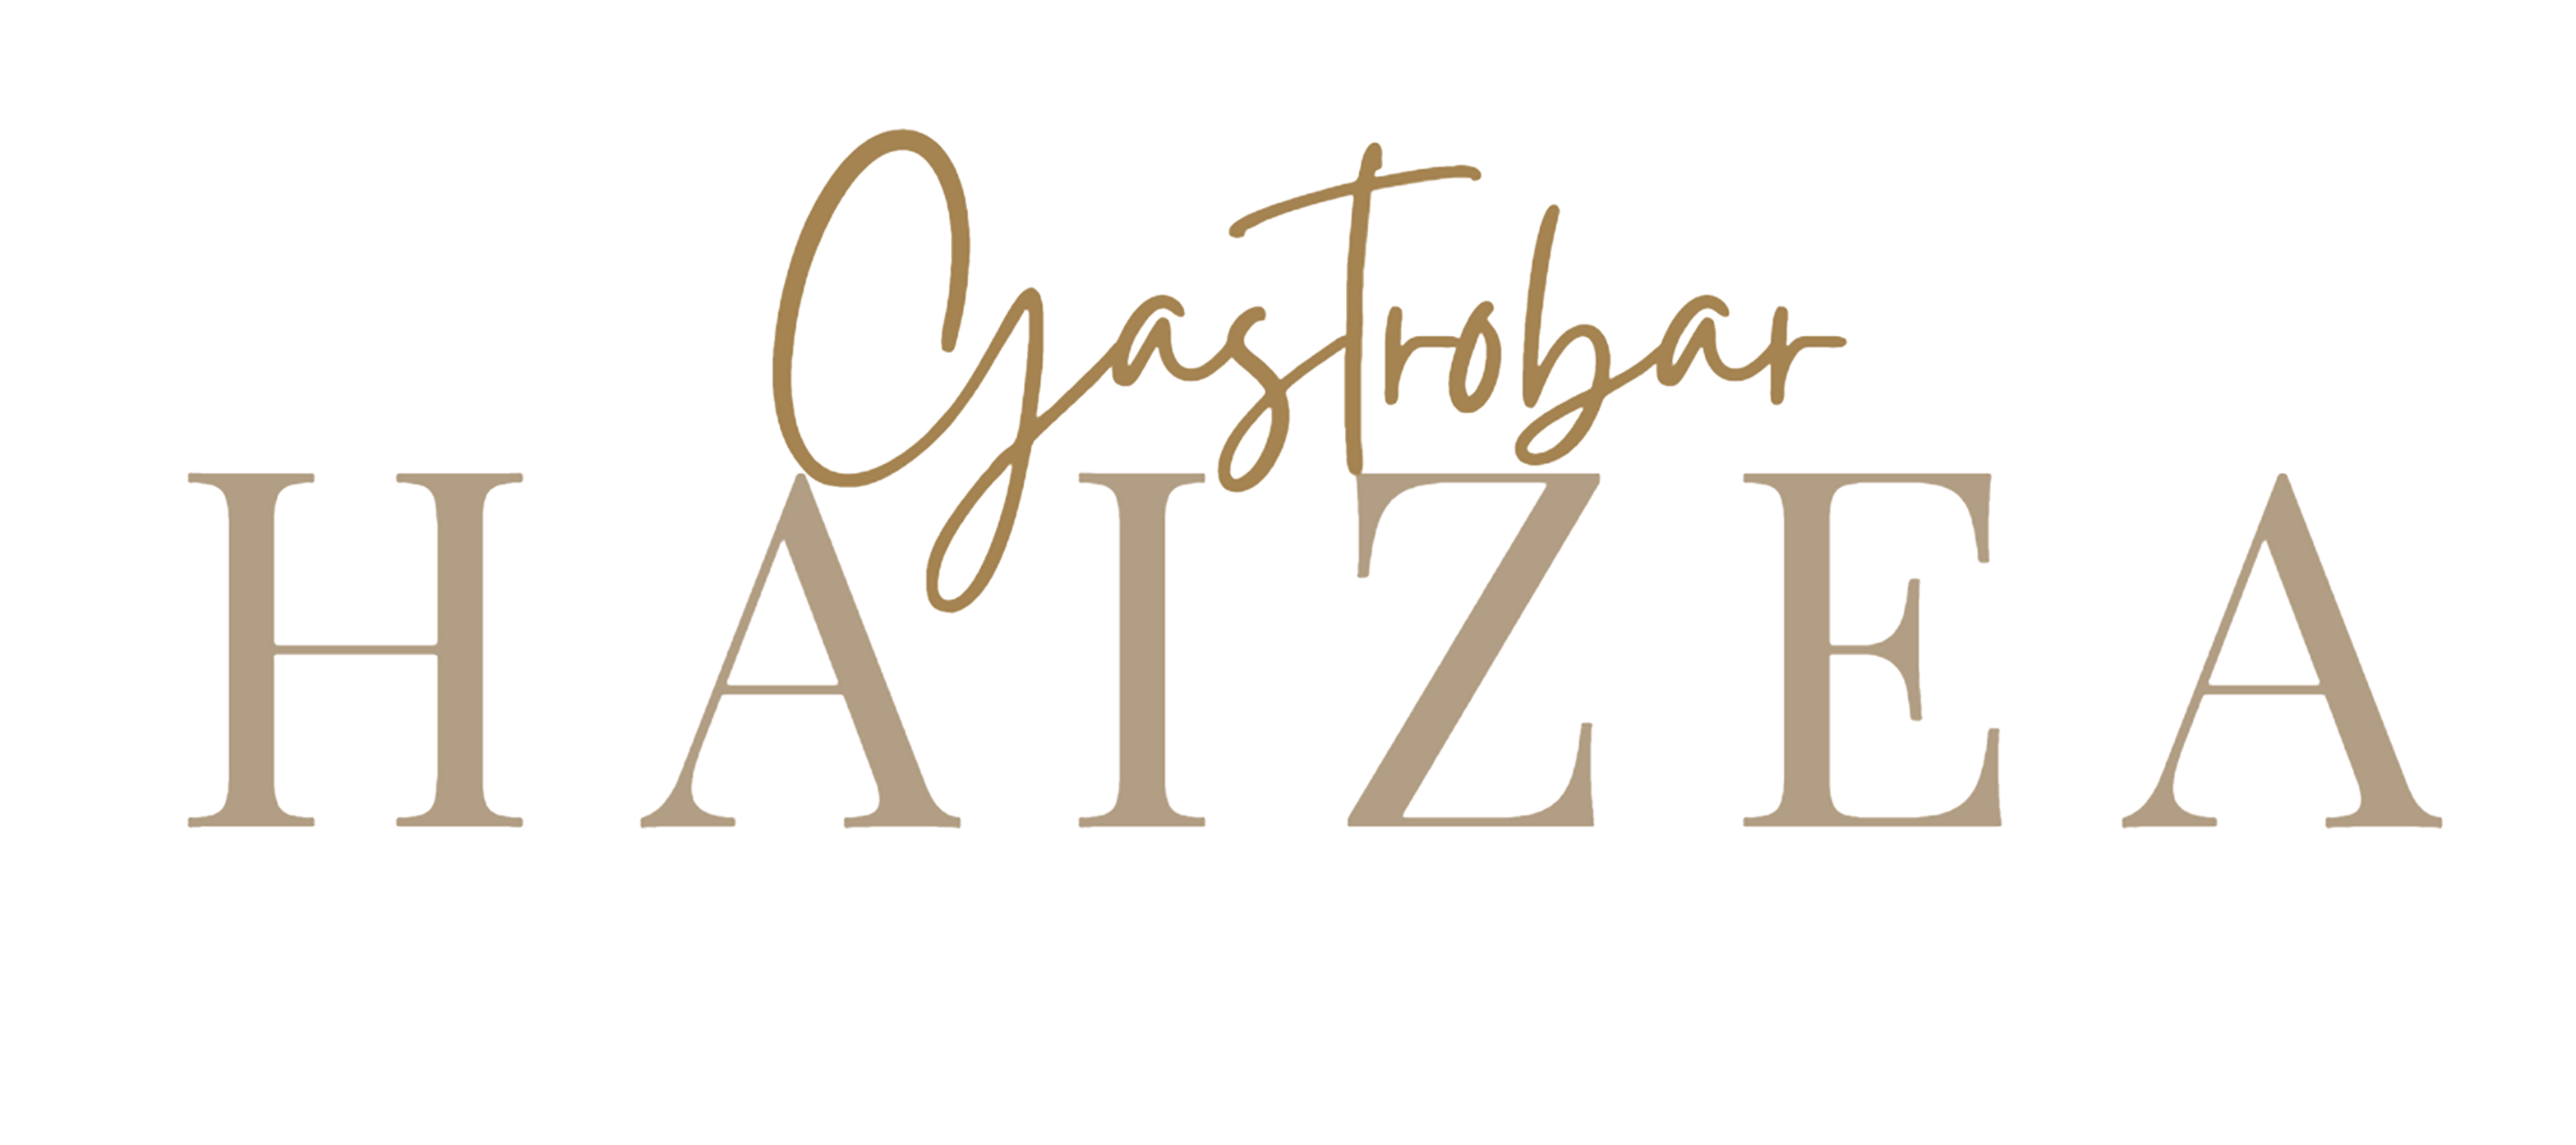 Gastrobar-Haizea